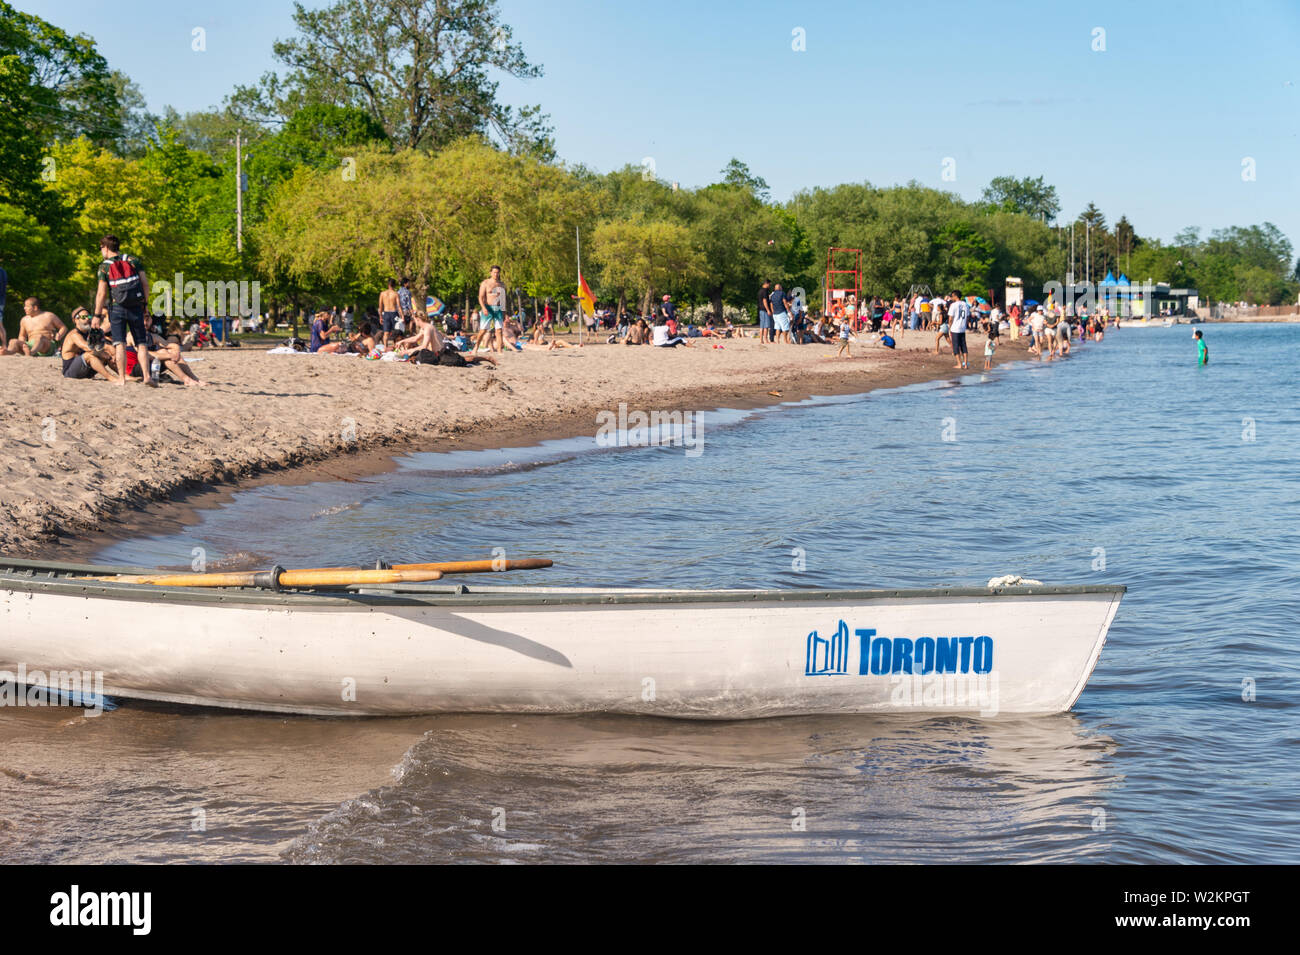 Toronto, CA - 23 Juni 2019: Kleines Boot mit Toronto City logo Verankerung in der Mitte der Insel Strand. Stockfoto